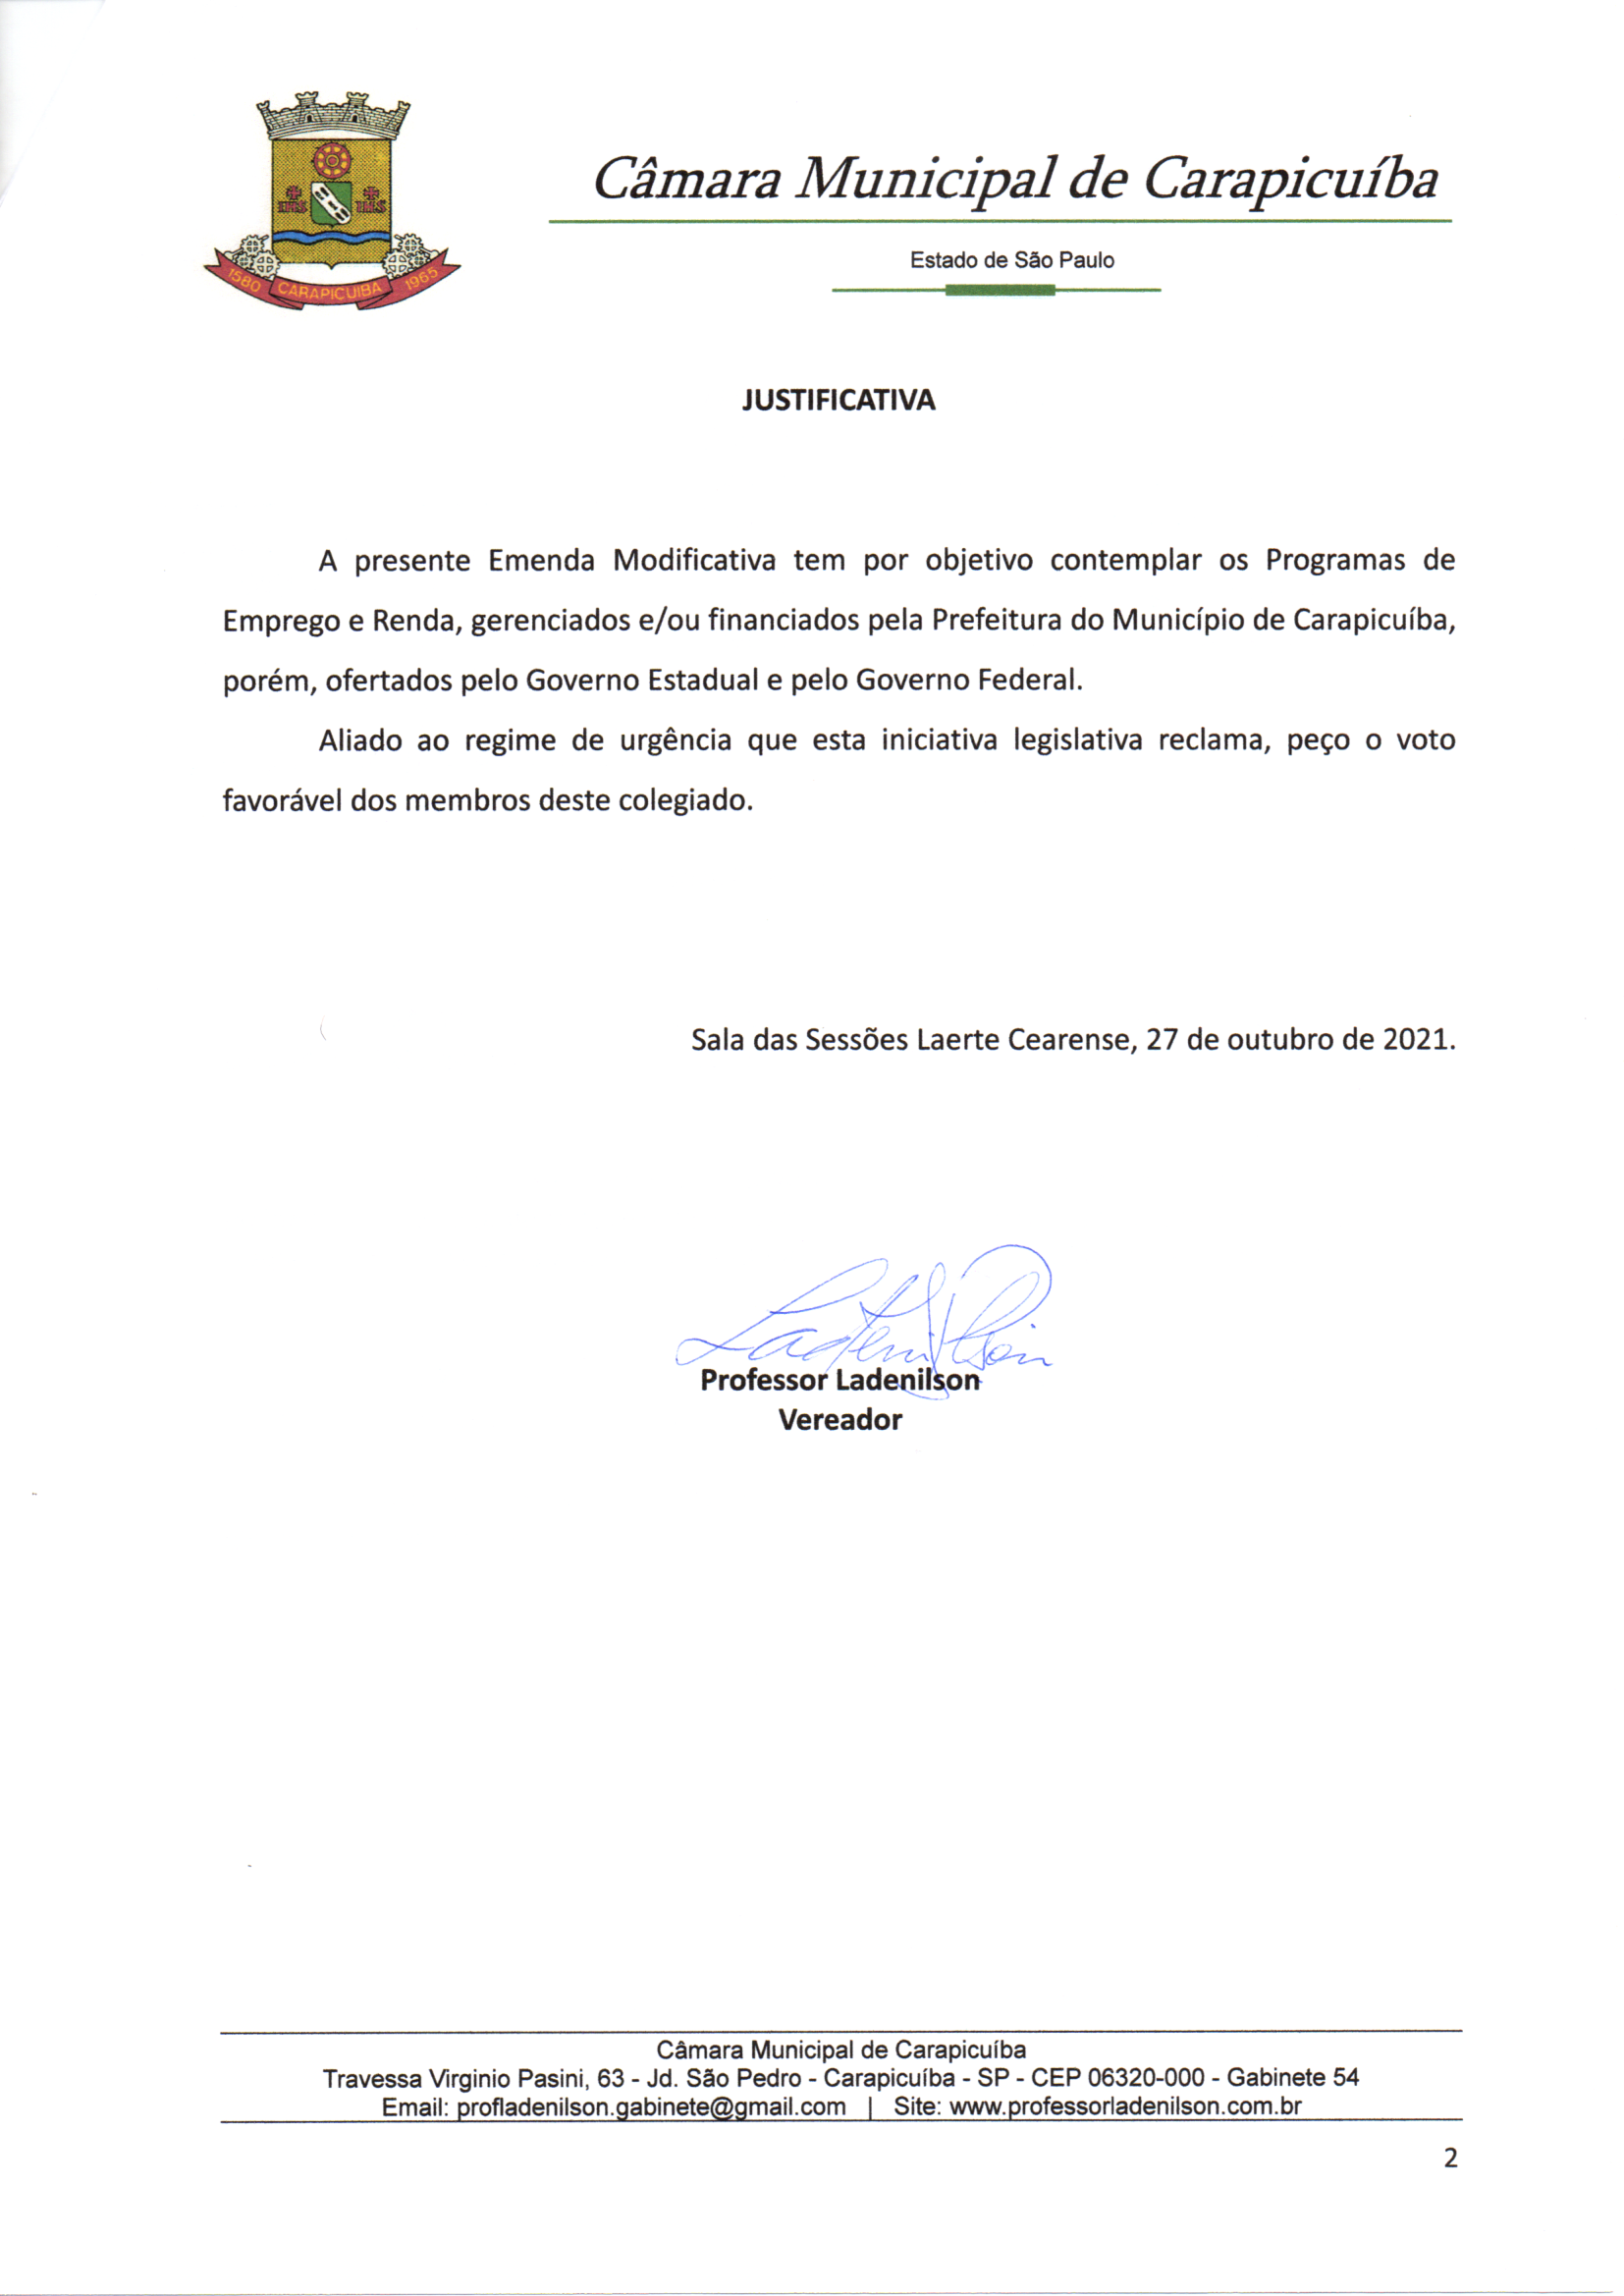 Corsan avalia proposta de negociação trabalhista - Jornal Ibiá